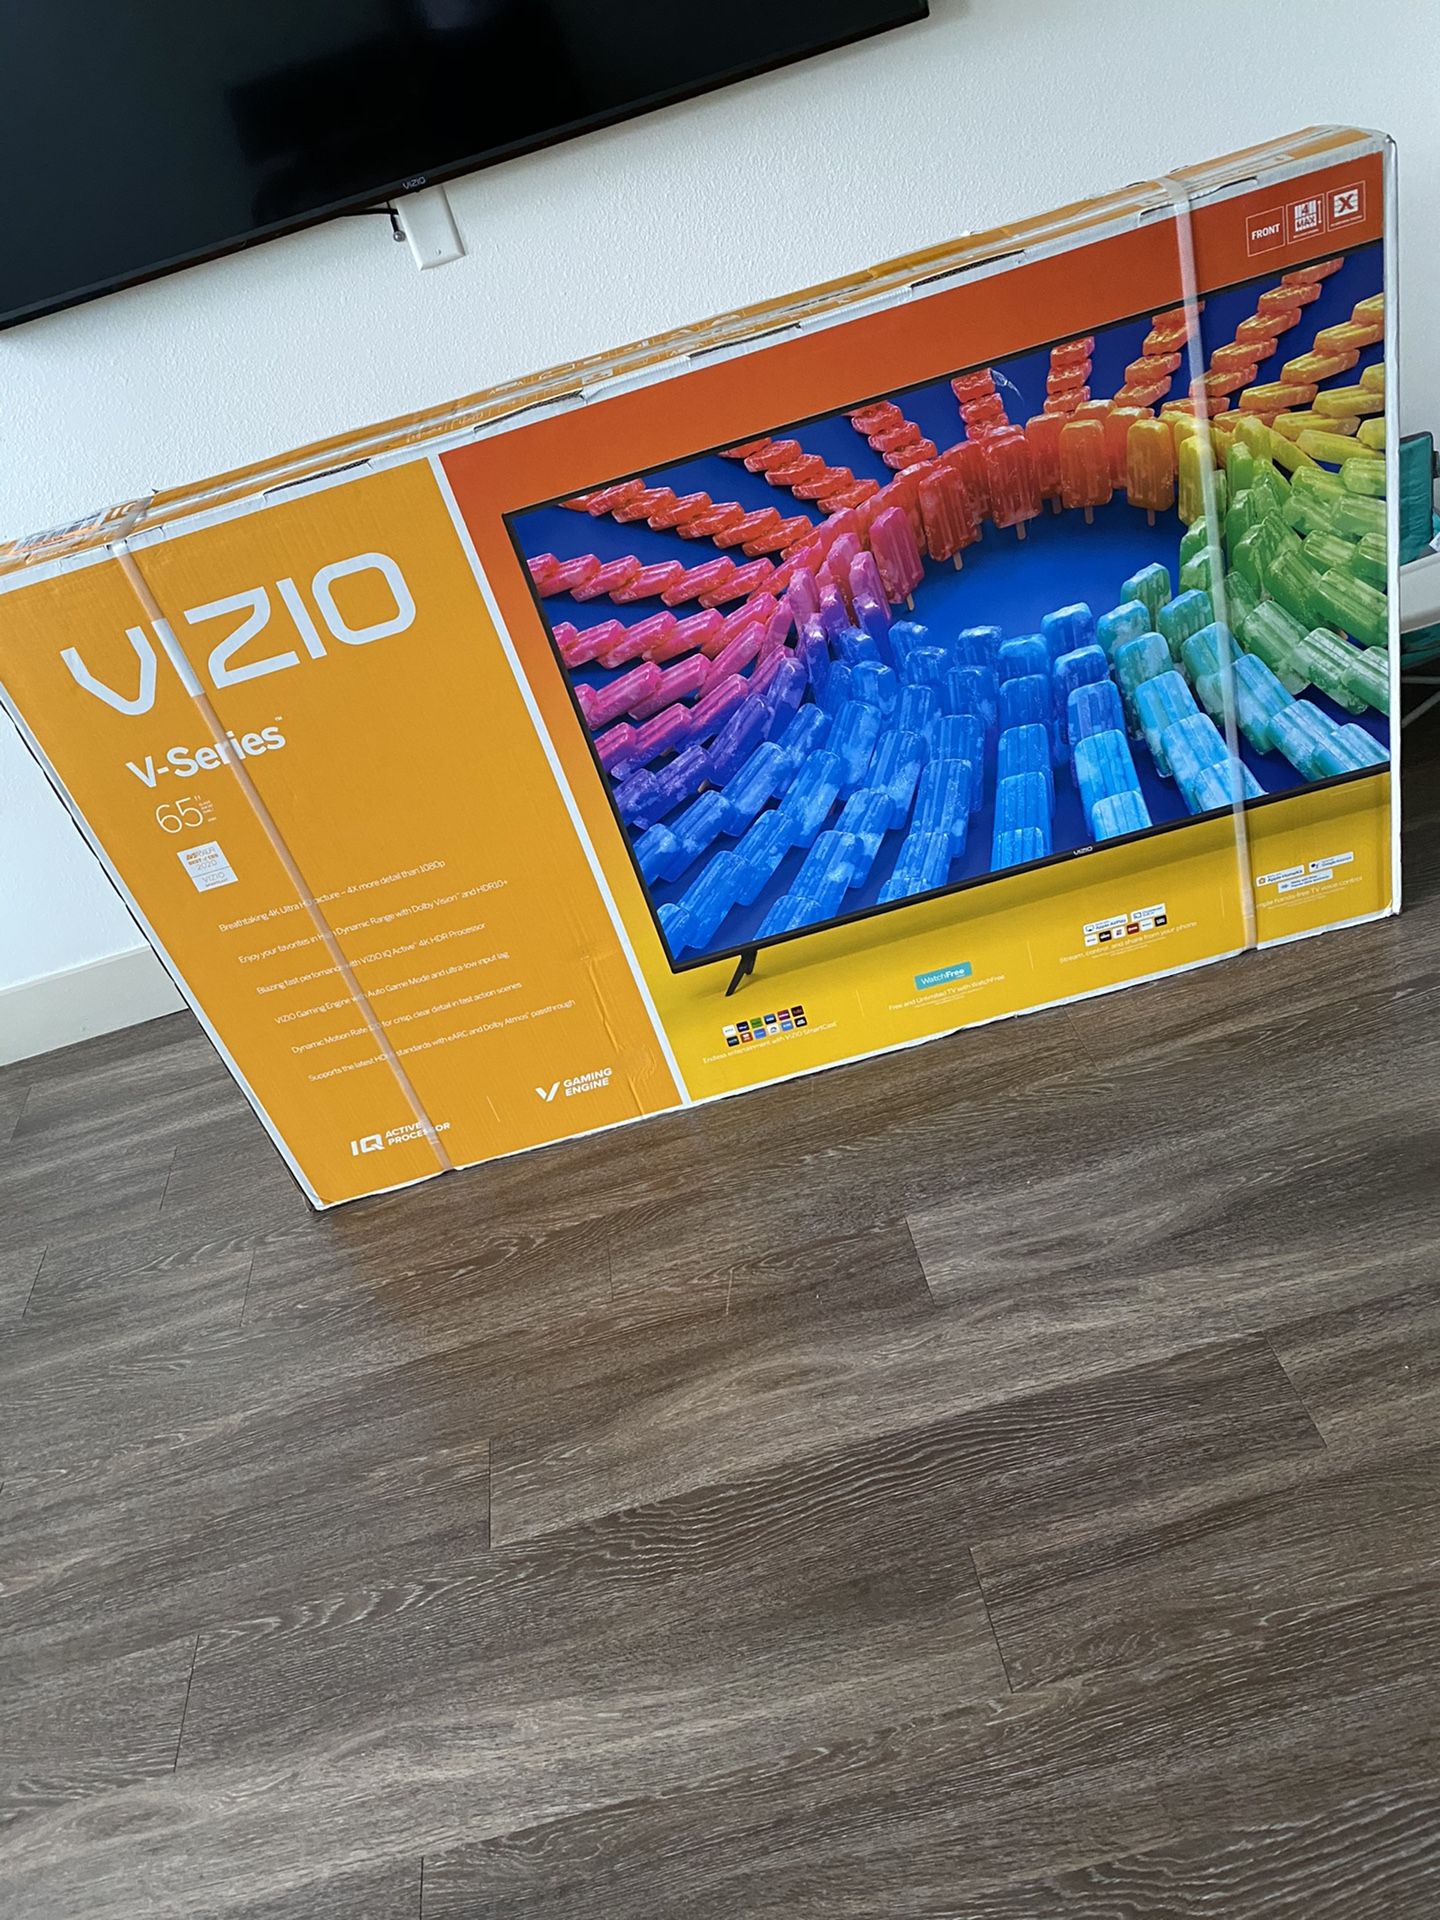 Vizio V-Series 65” 4K HDR Smart TV